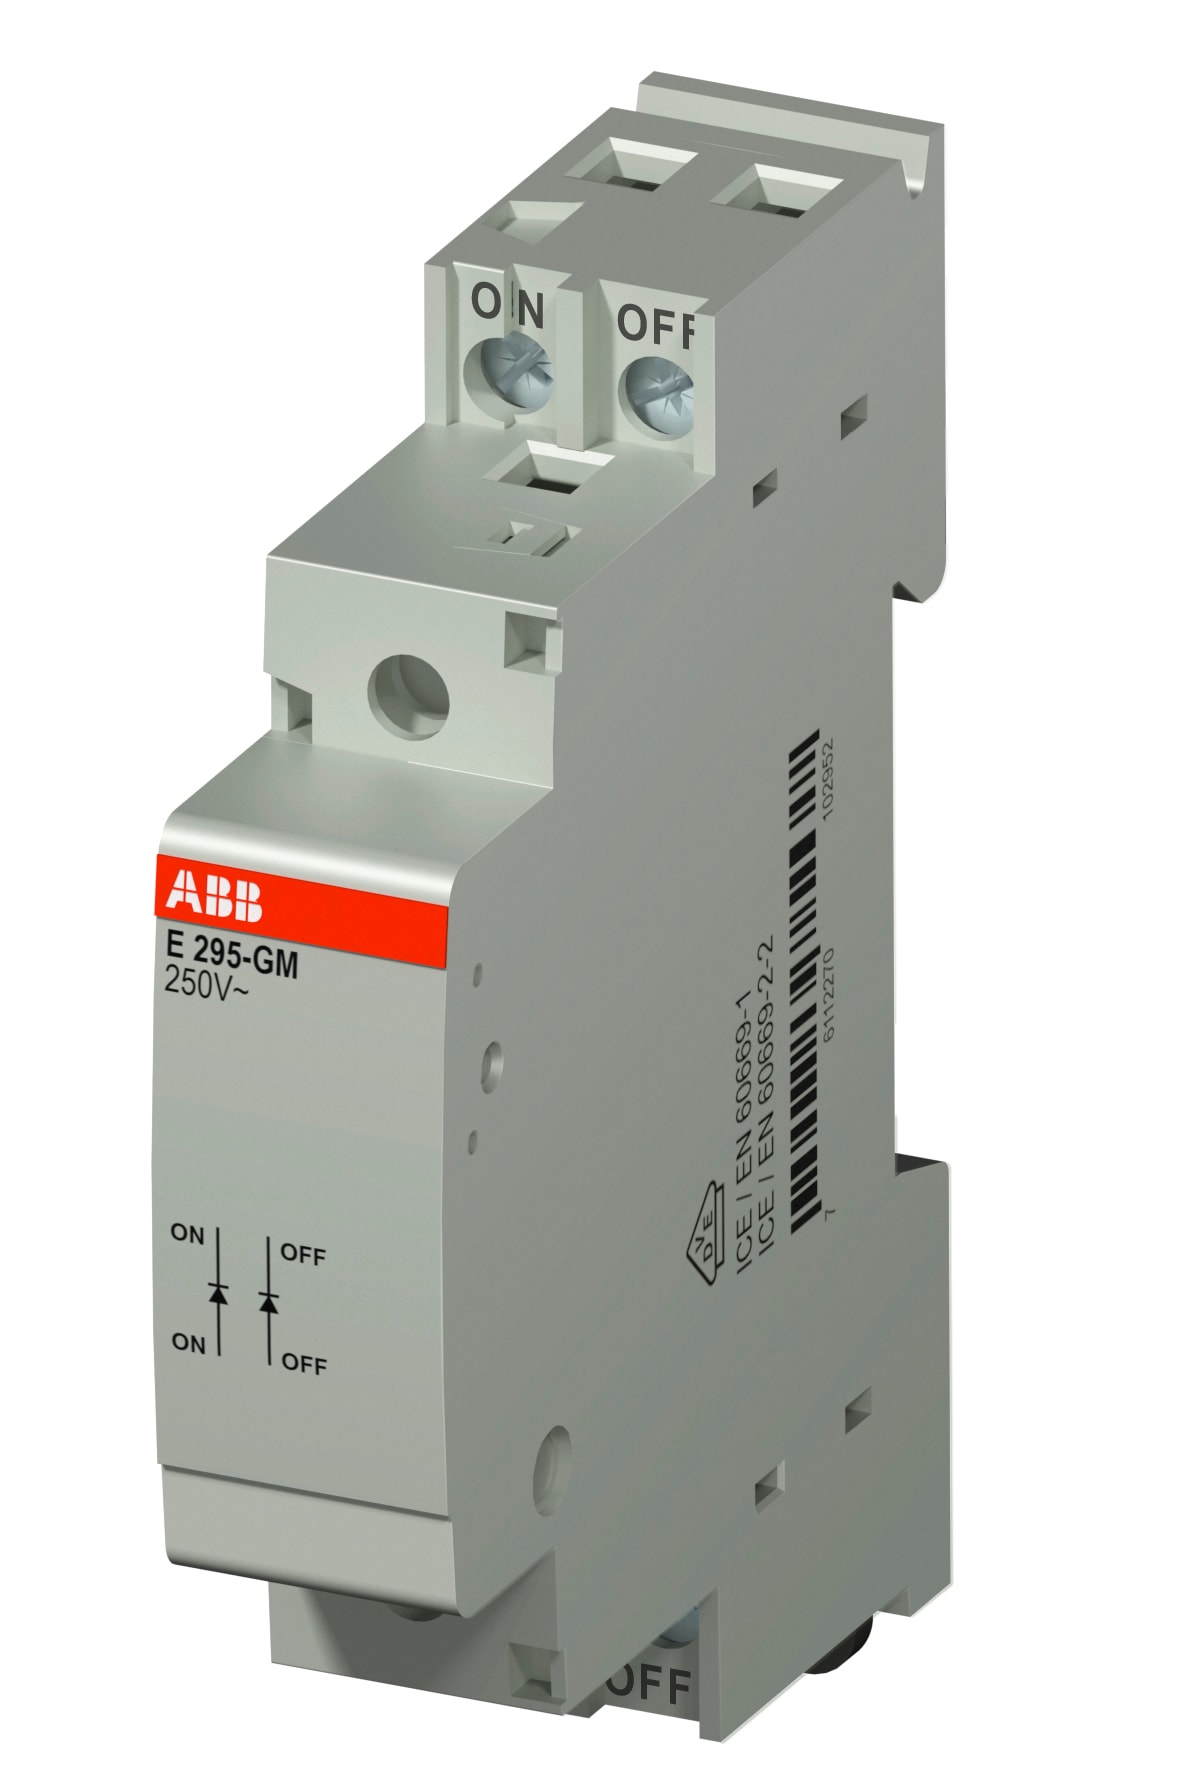 ABB Electrification - E295-GM Group module